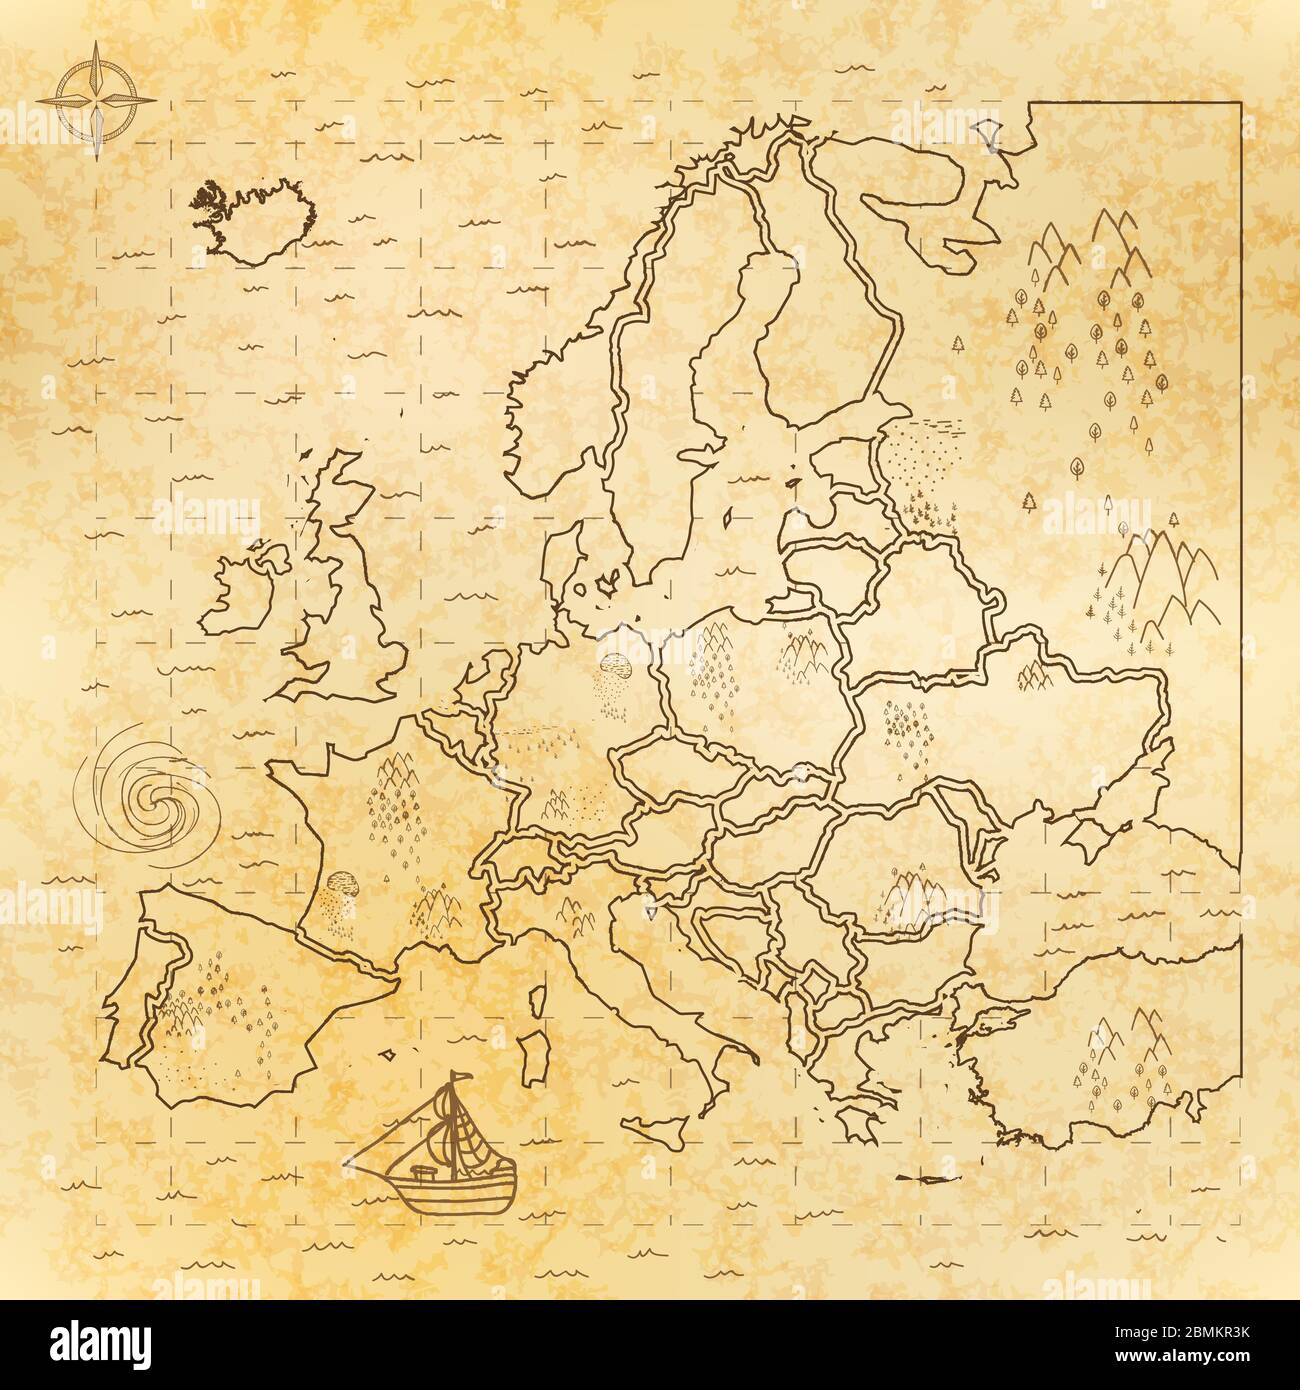 Carte médiévale d'Europe ancienne sur papier ancien Illustration de Vecteur